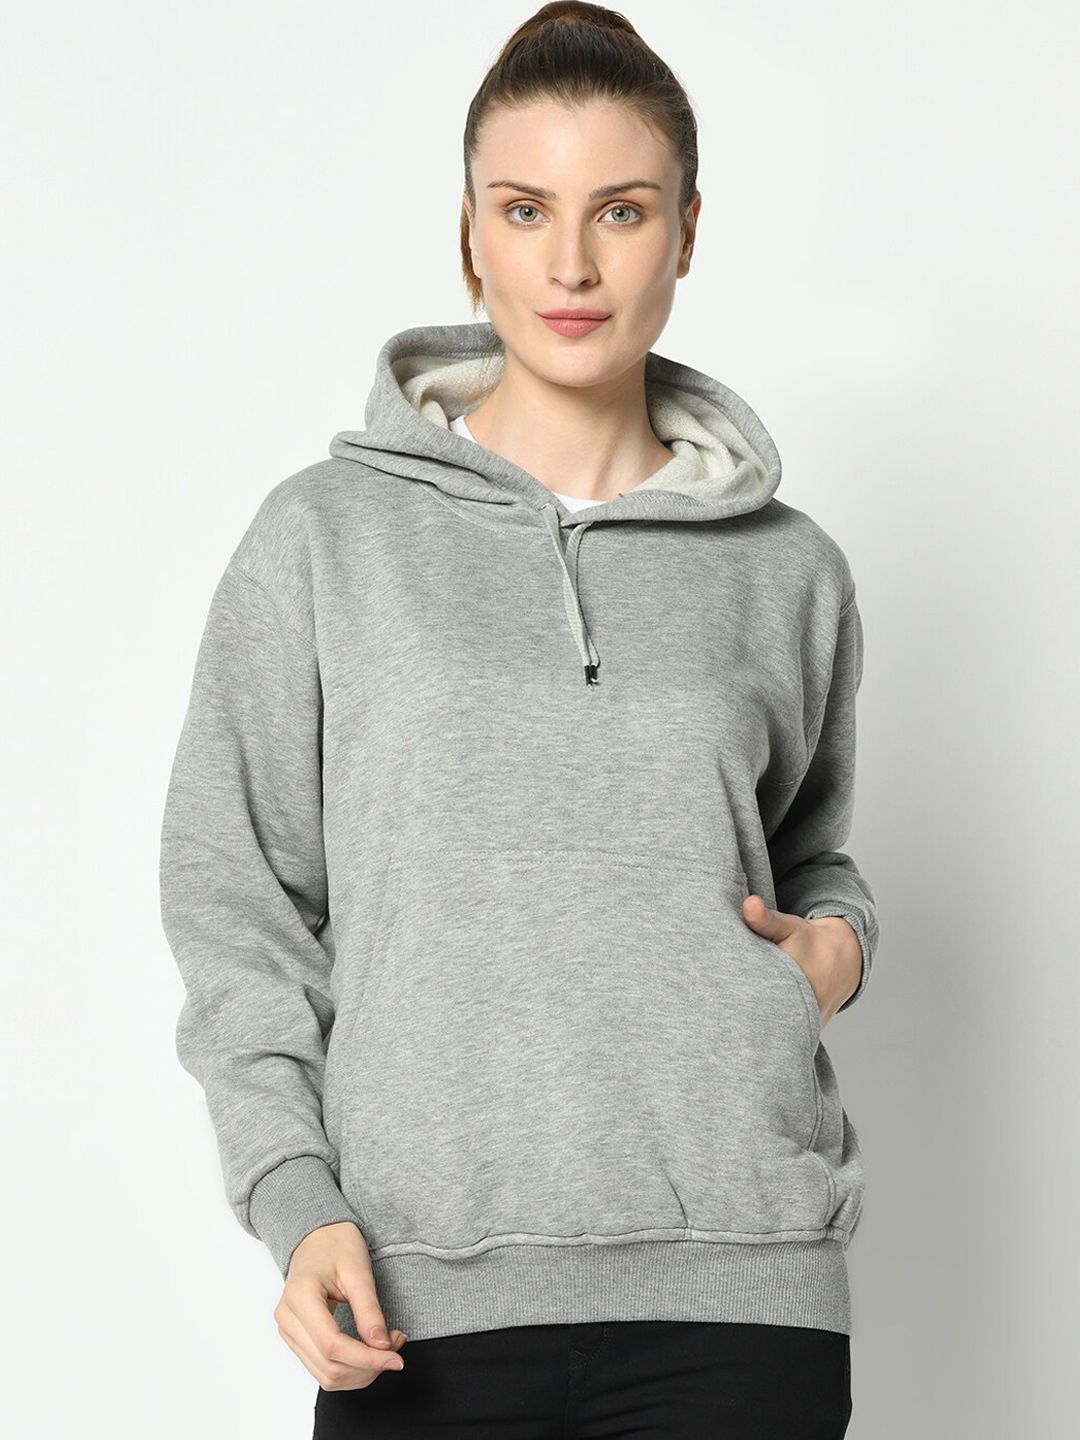 VIMAL JONNEY Women Grey Melange Solid Hooded Sweatshirt Price in India